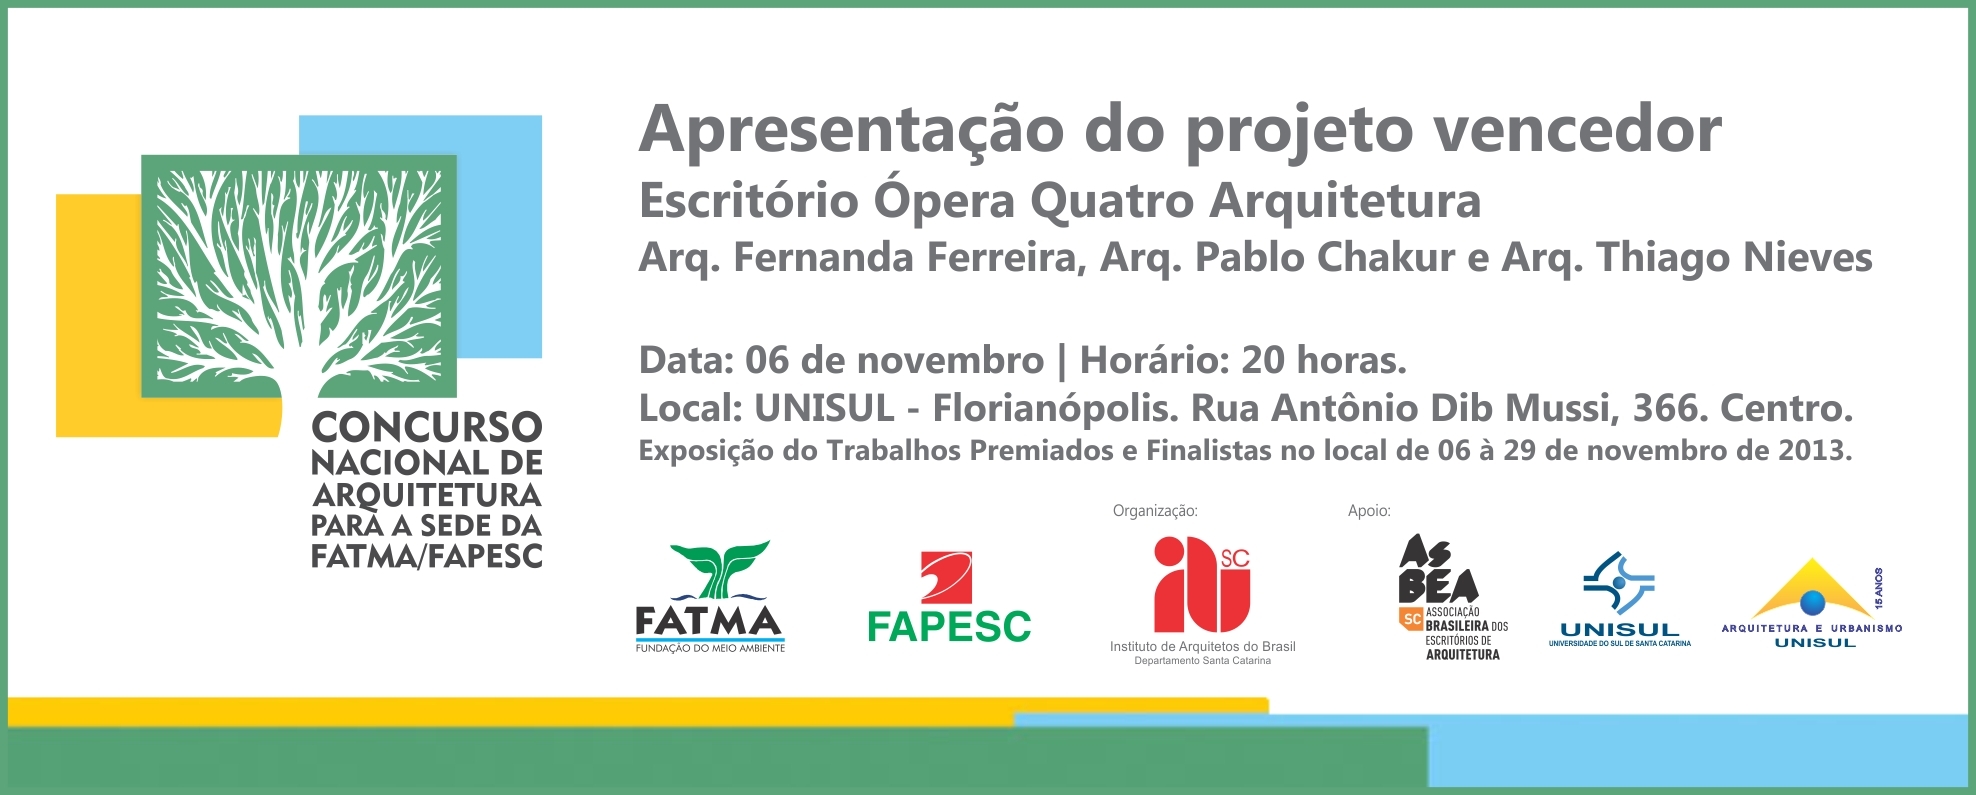 Convite-Concurso_IAB-FATMA-FAPESC-APRESENTACAO_